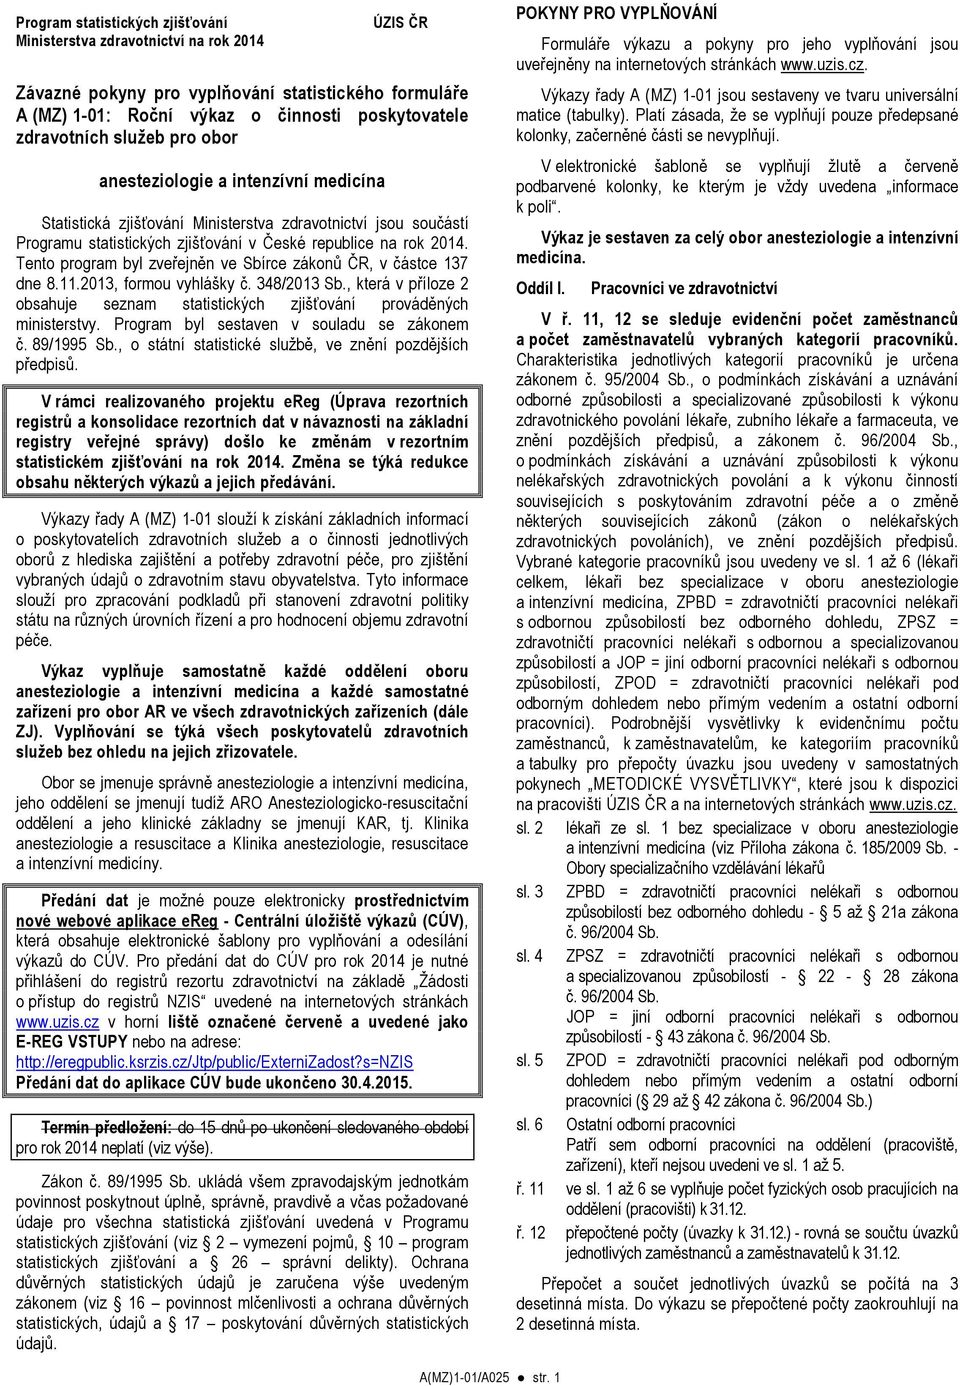 Tento program byl zveřejněn ve Sbírce zákonů ČR, v částce 137 dne 8.11.2013, formou vyhlášky č. 348/2013 Sb., která v příloze 2 obsahuje seznam statistických zjišťování prováděných ministerstvy.